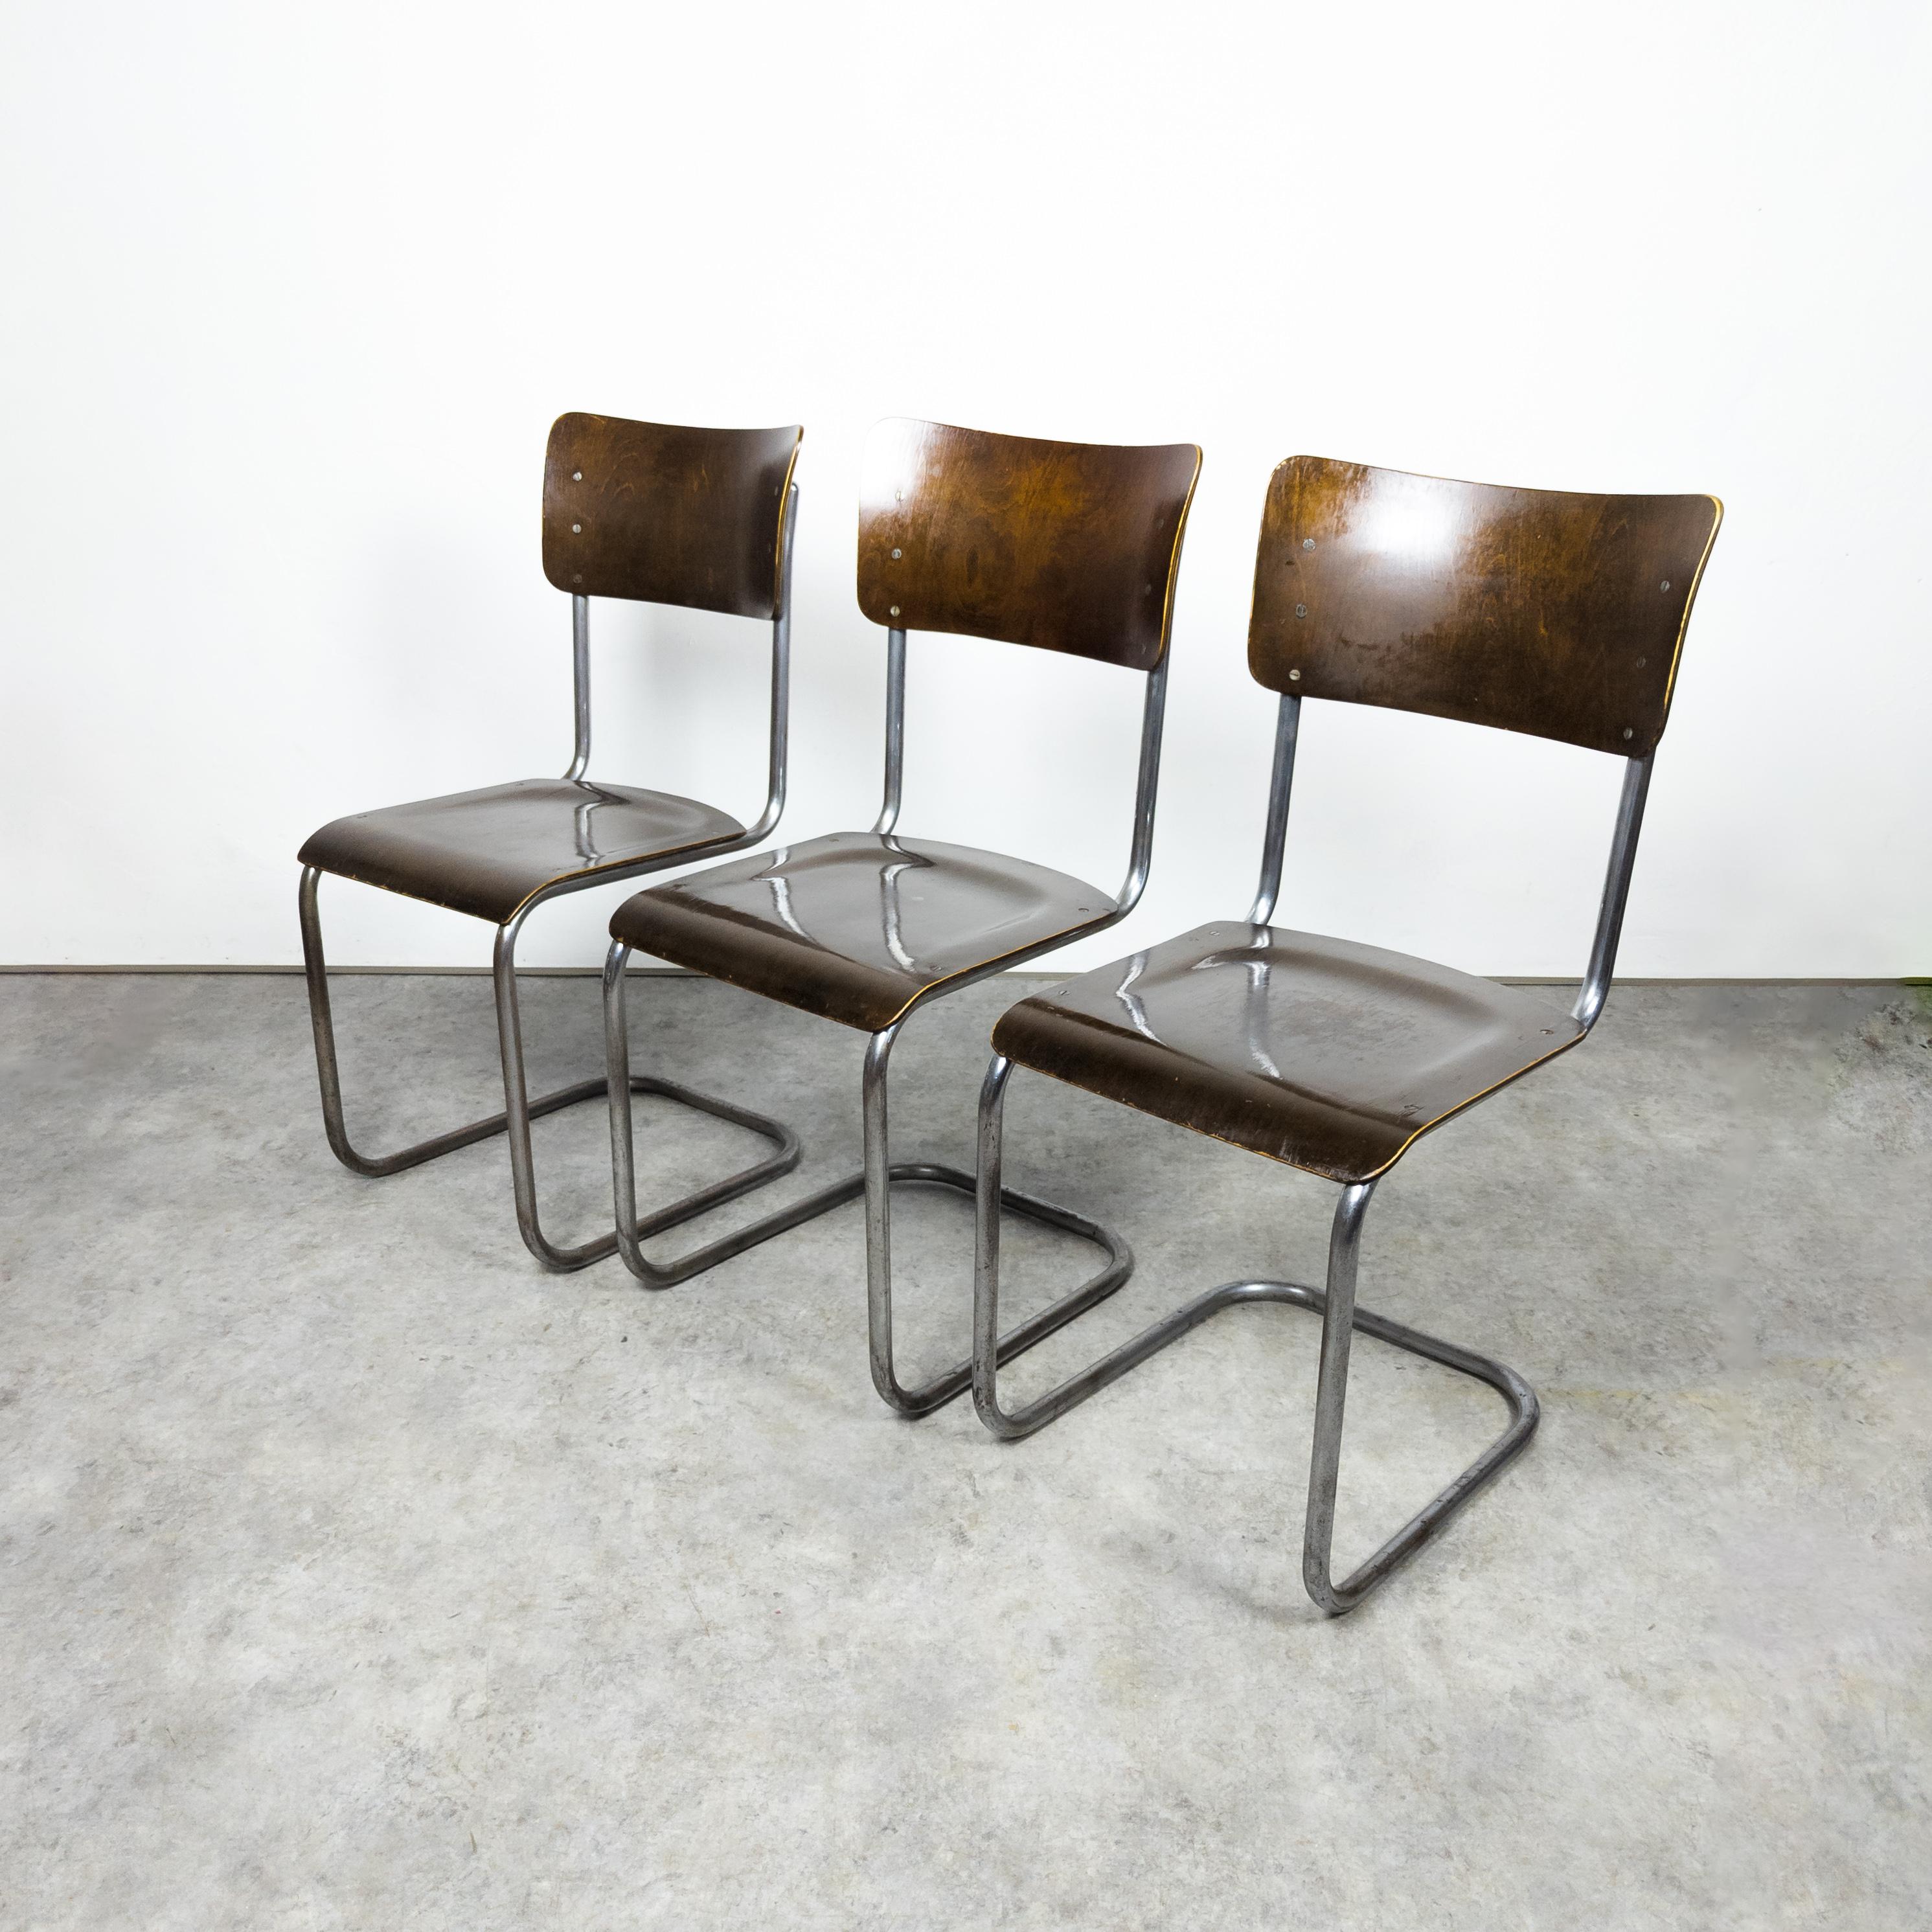 Frühe freitragende S 43-Stühle von Mart Stam, 1930er Jahre (Bauhaus)